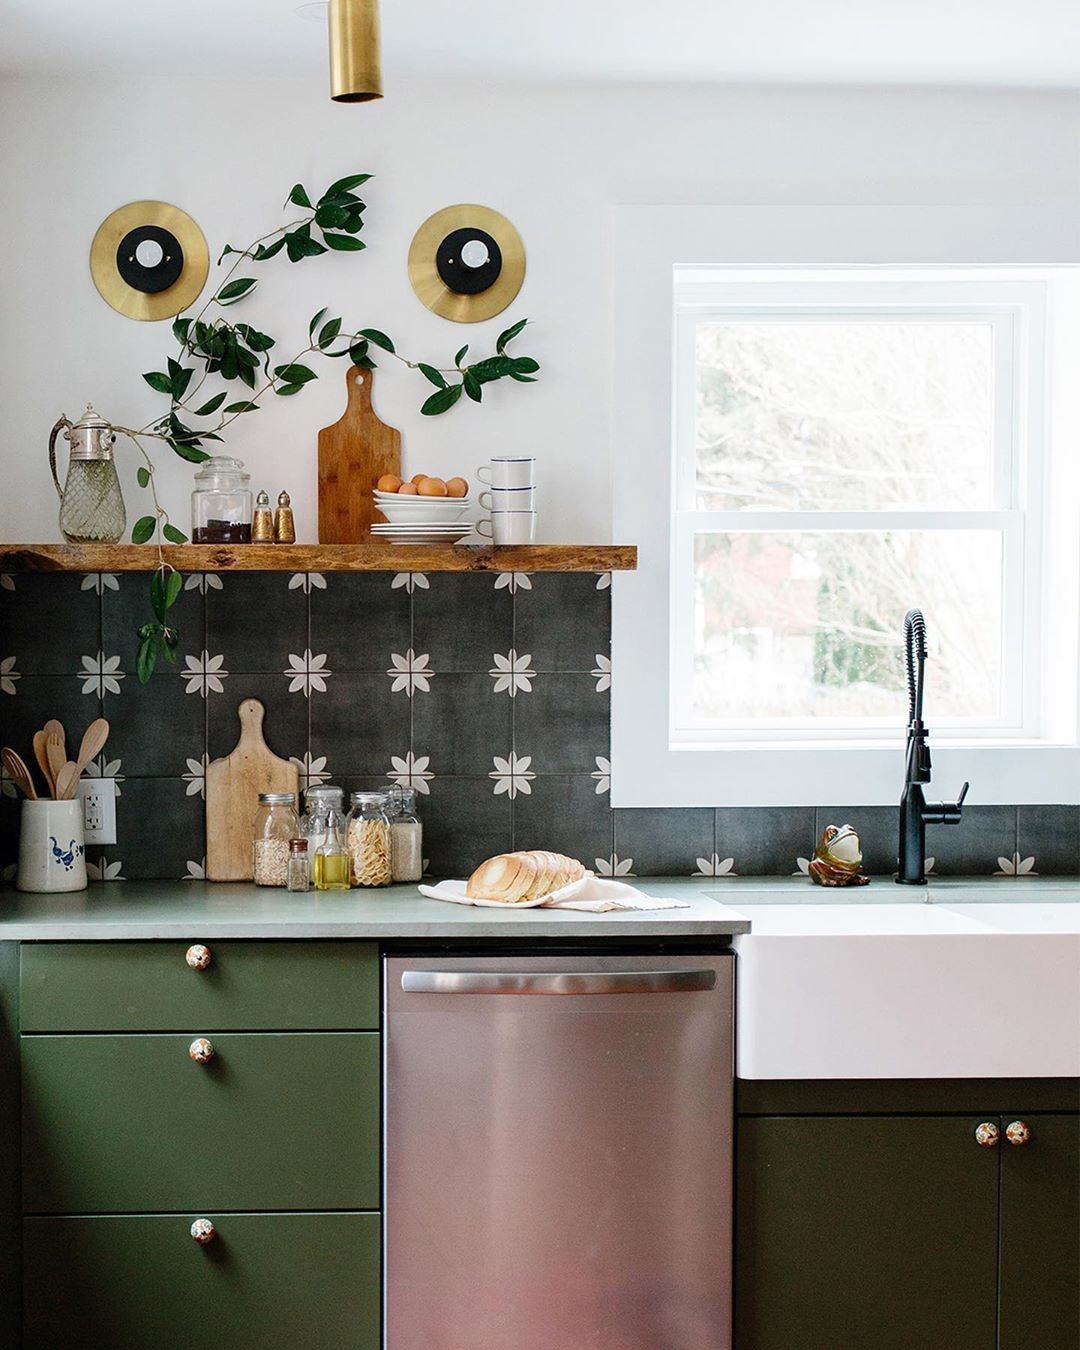 Décor do dia: cozinha com armário verde e azulejo floral (Foto: Divulgação)